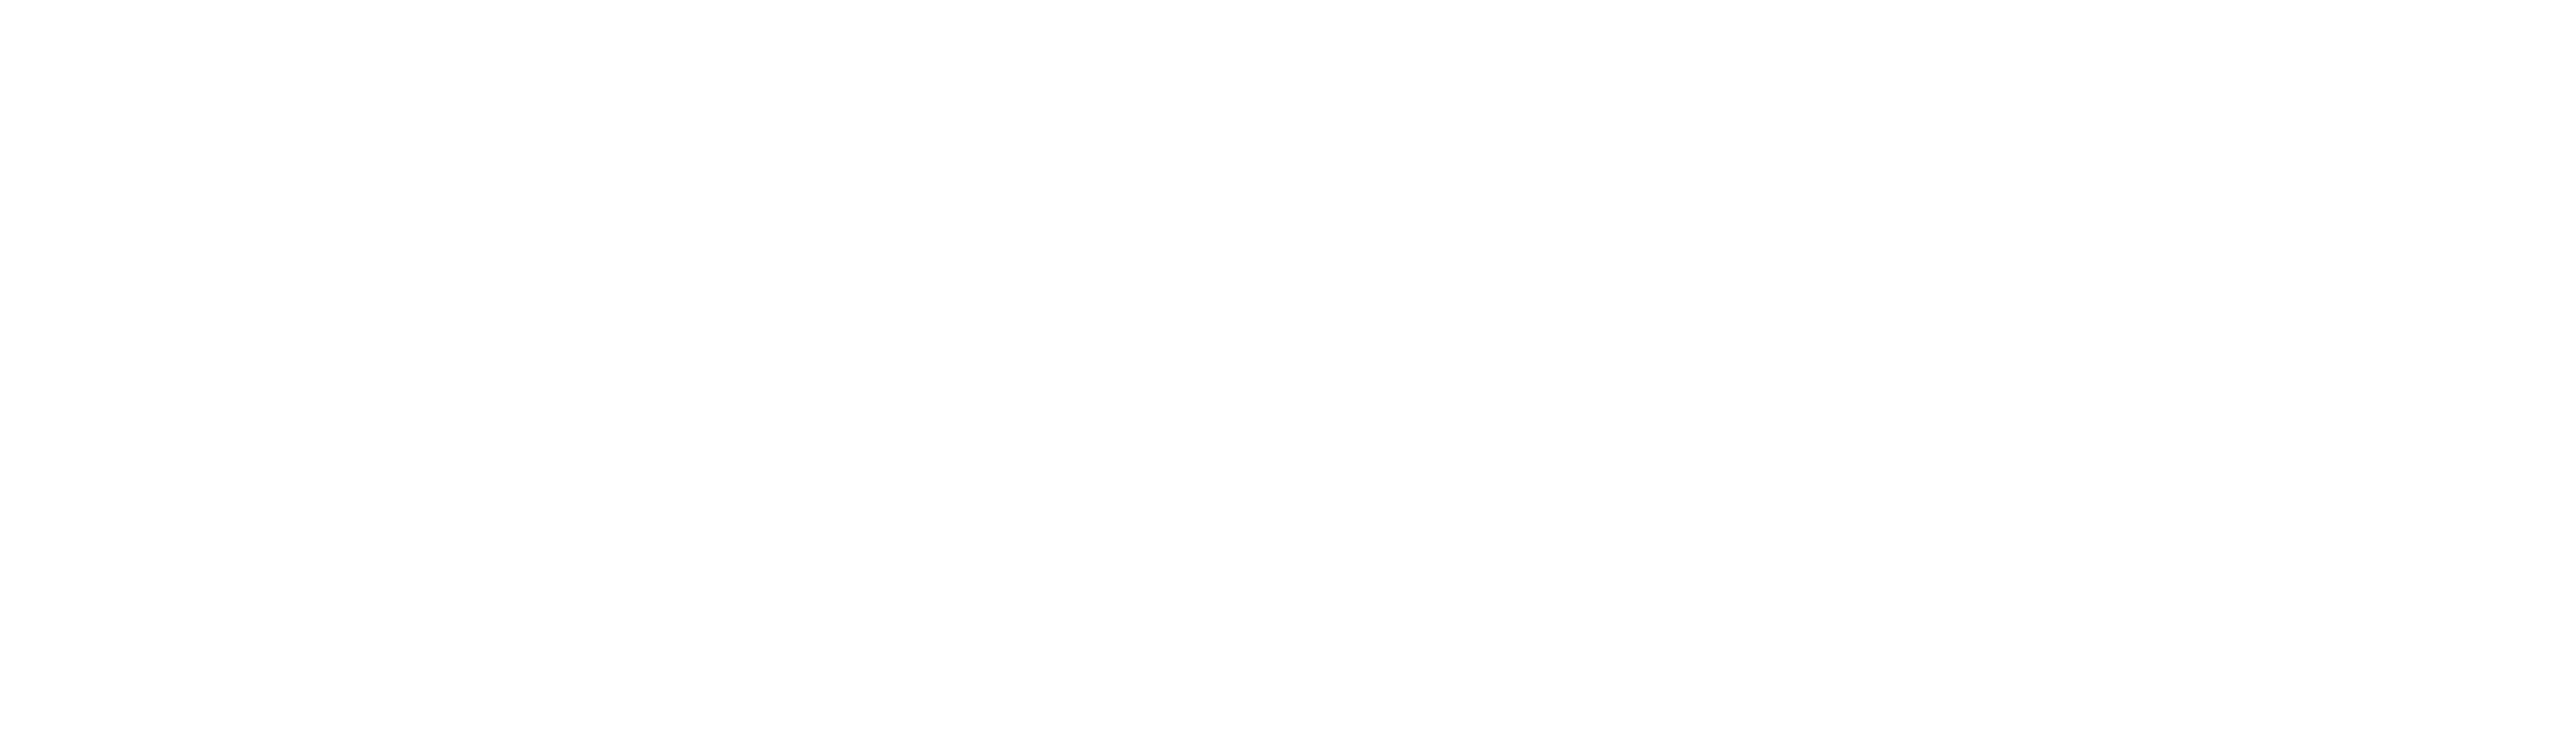 EZClinic White Logo